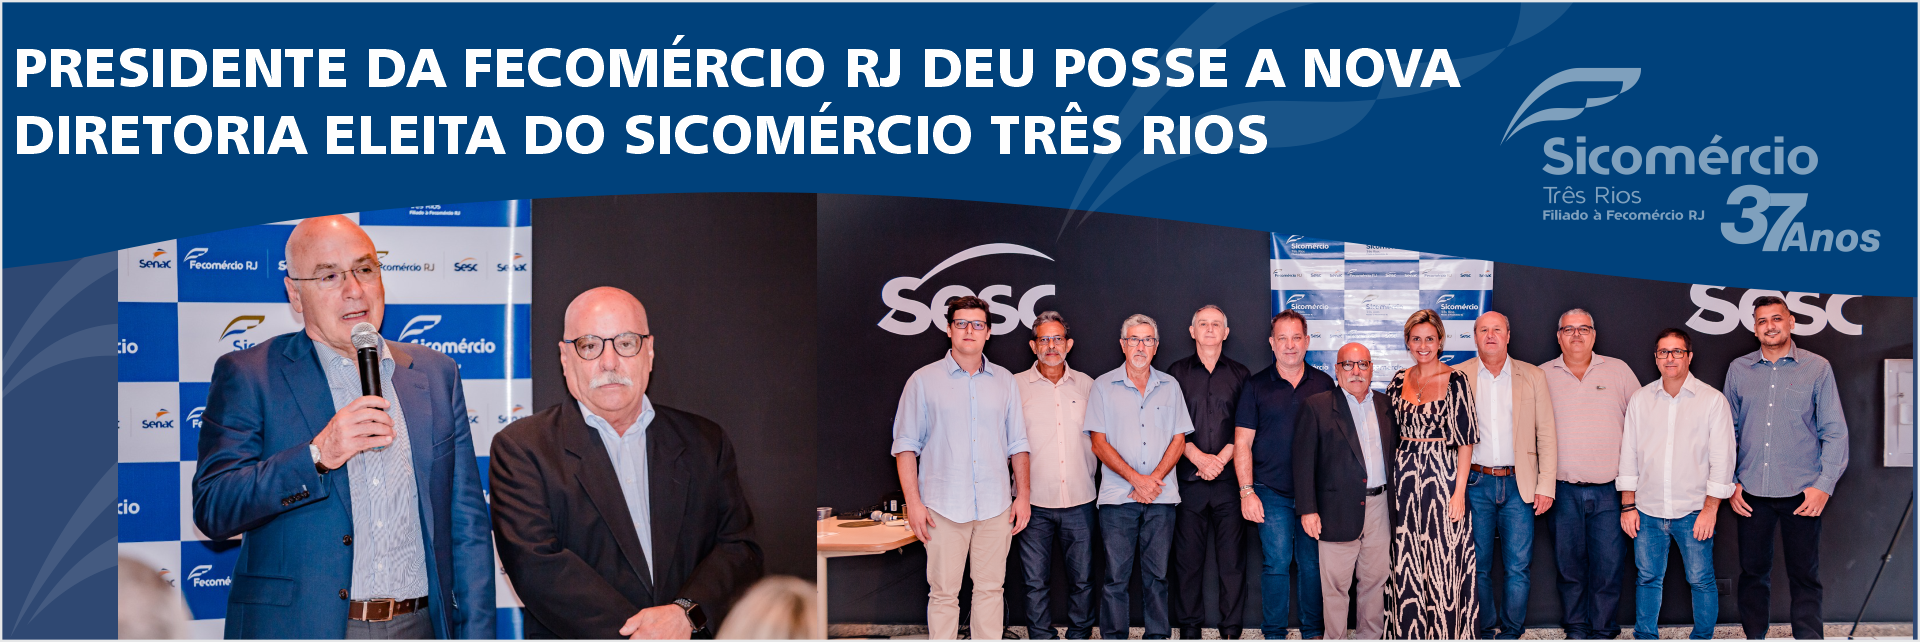 Presidente da Fecomércio RJ deu posse a nova diretoria eleita do Sicomércio Três Rios